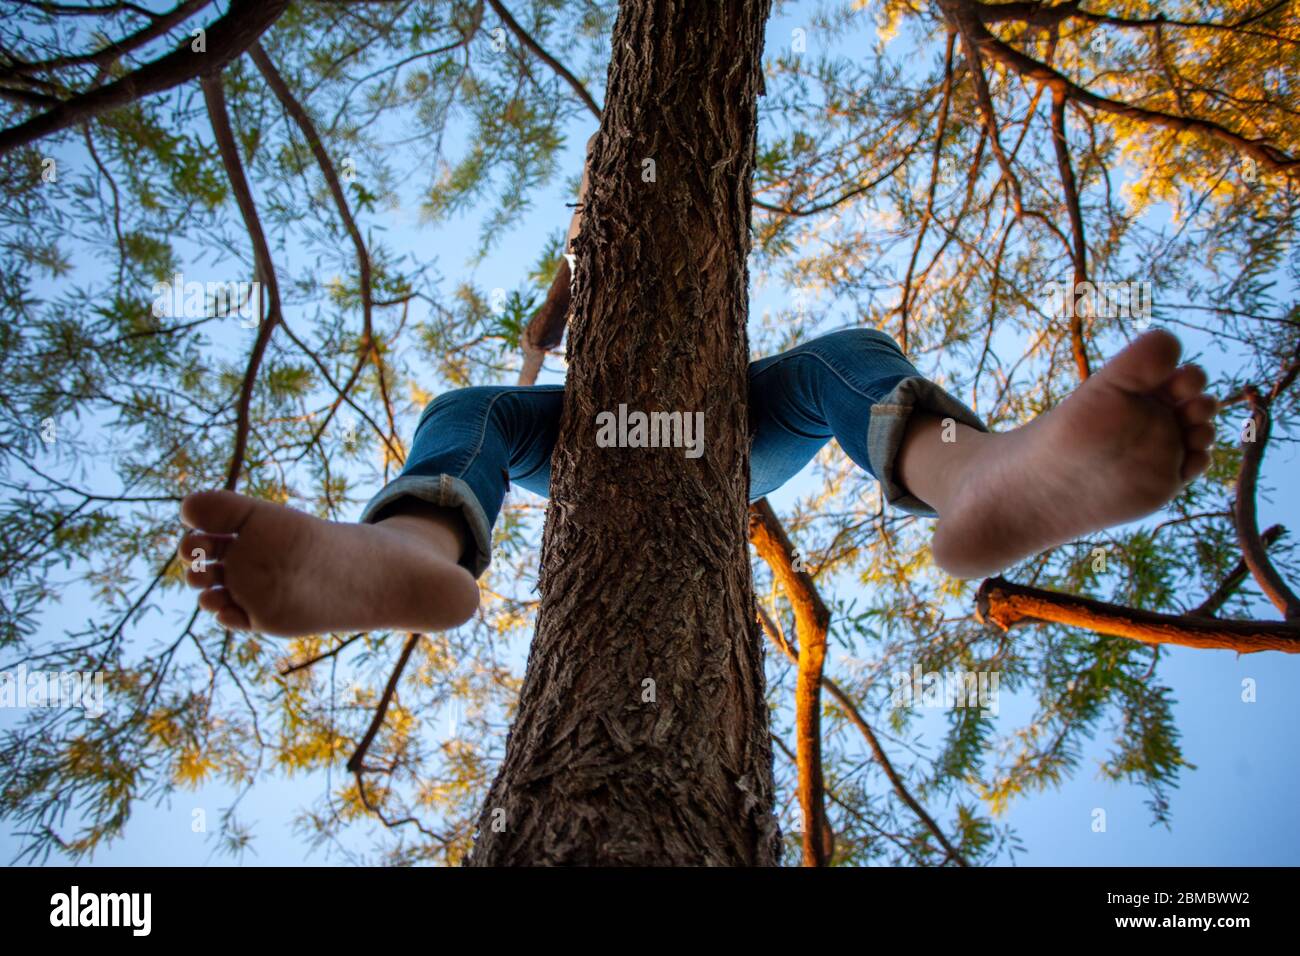 Von unten betrachtet baumeln die Beine eines Kindes vom Baum Hoch zum Himmel Stockfoto